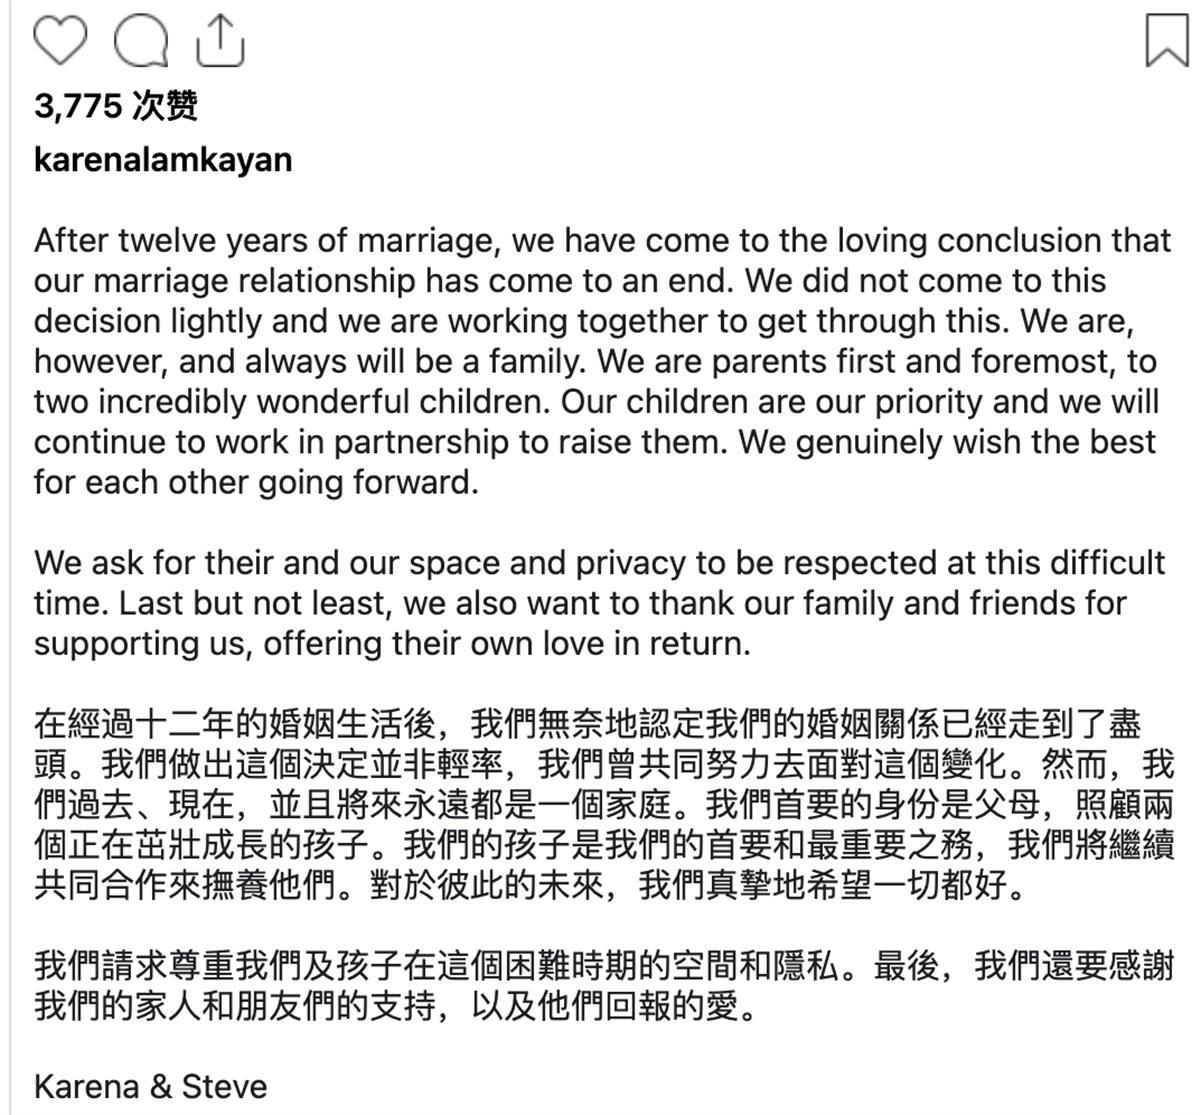 台湾金马影后林嘉欣宣布离婚，结束12年婚姻